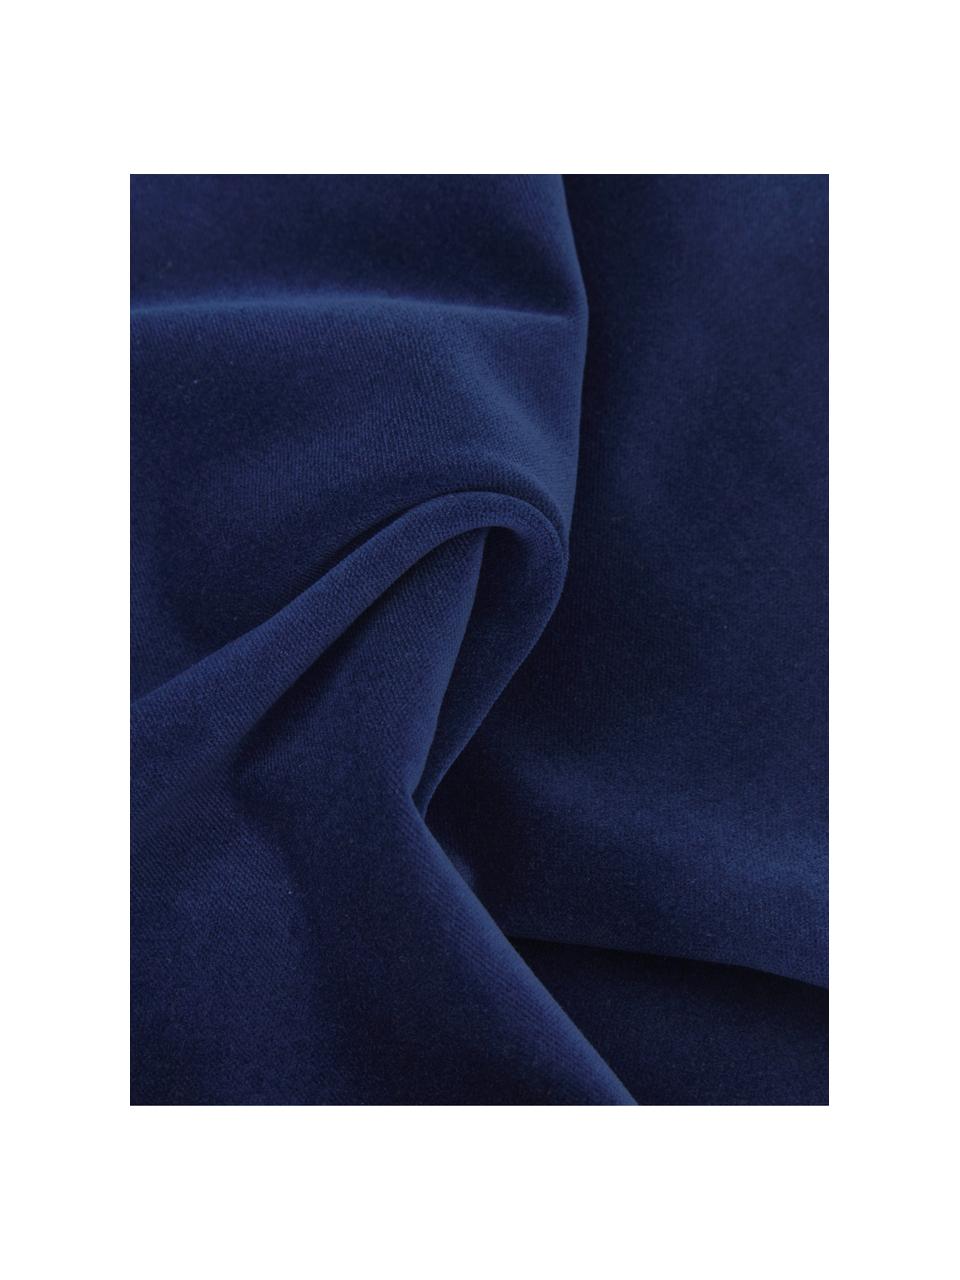 Federa arredo in velluto blu navy Dana, 100% velluto di cotone, Blu navy, Larg. 50 x Lung. 50 cm